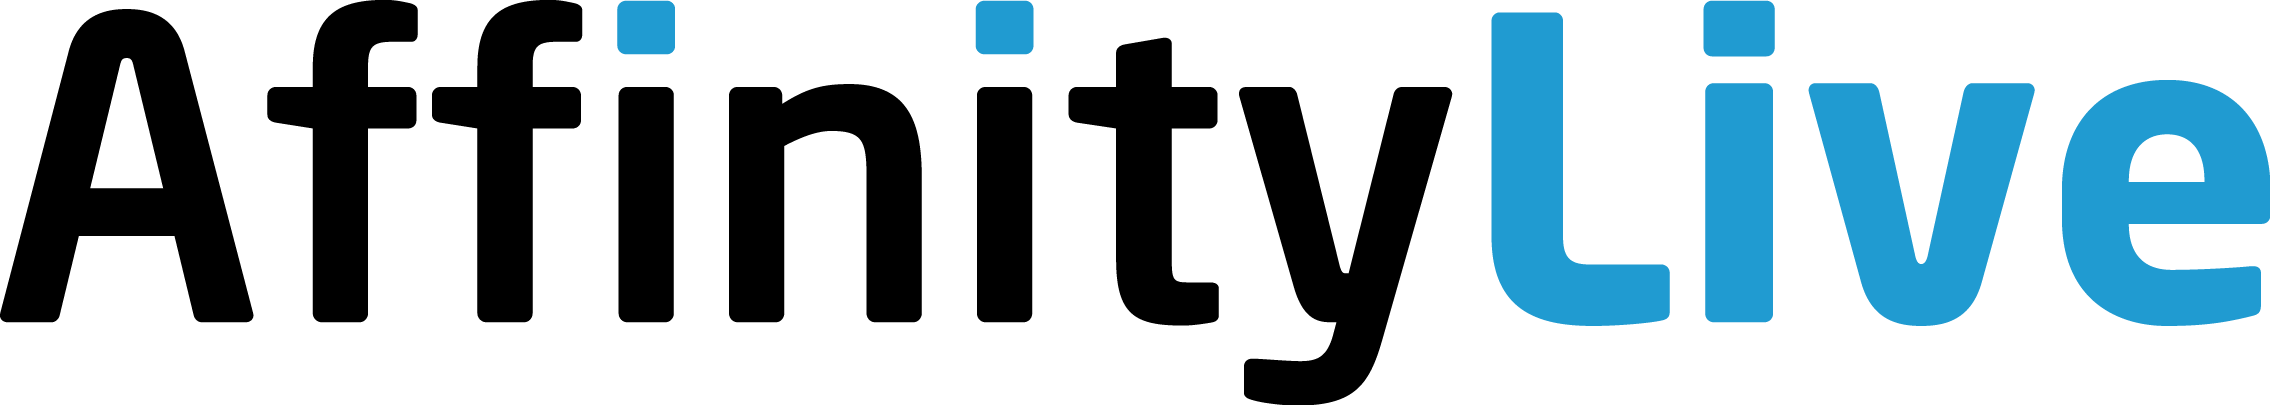 affinitylive-logo.png